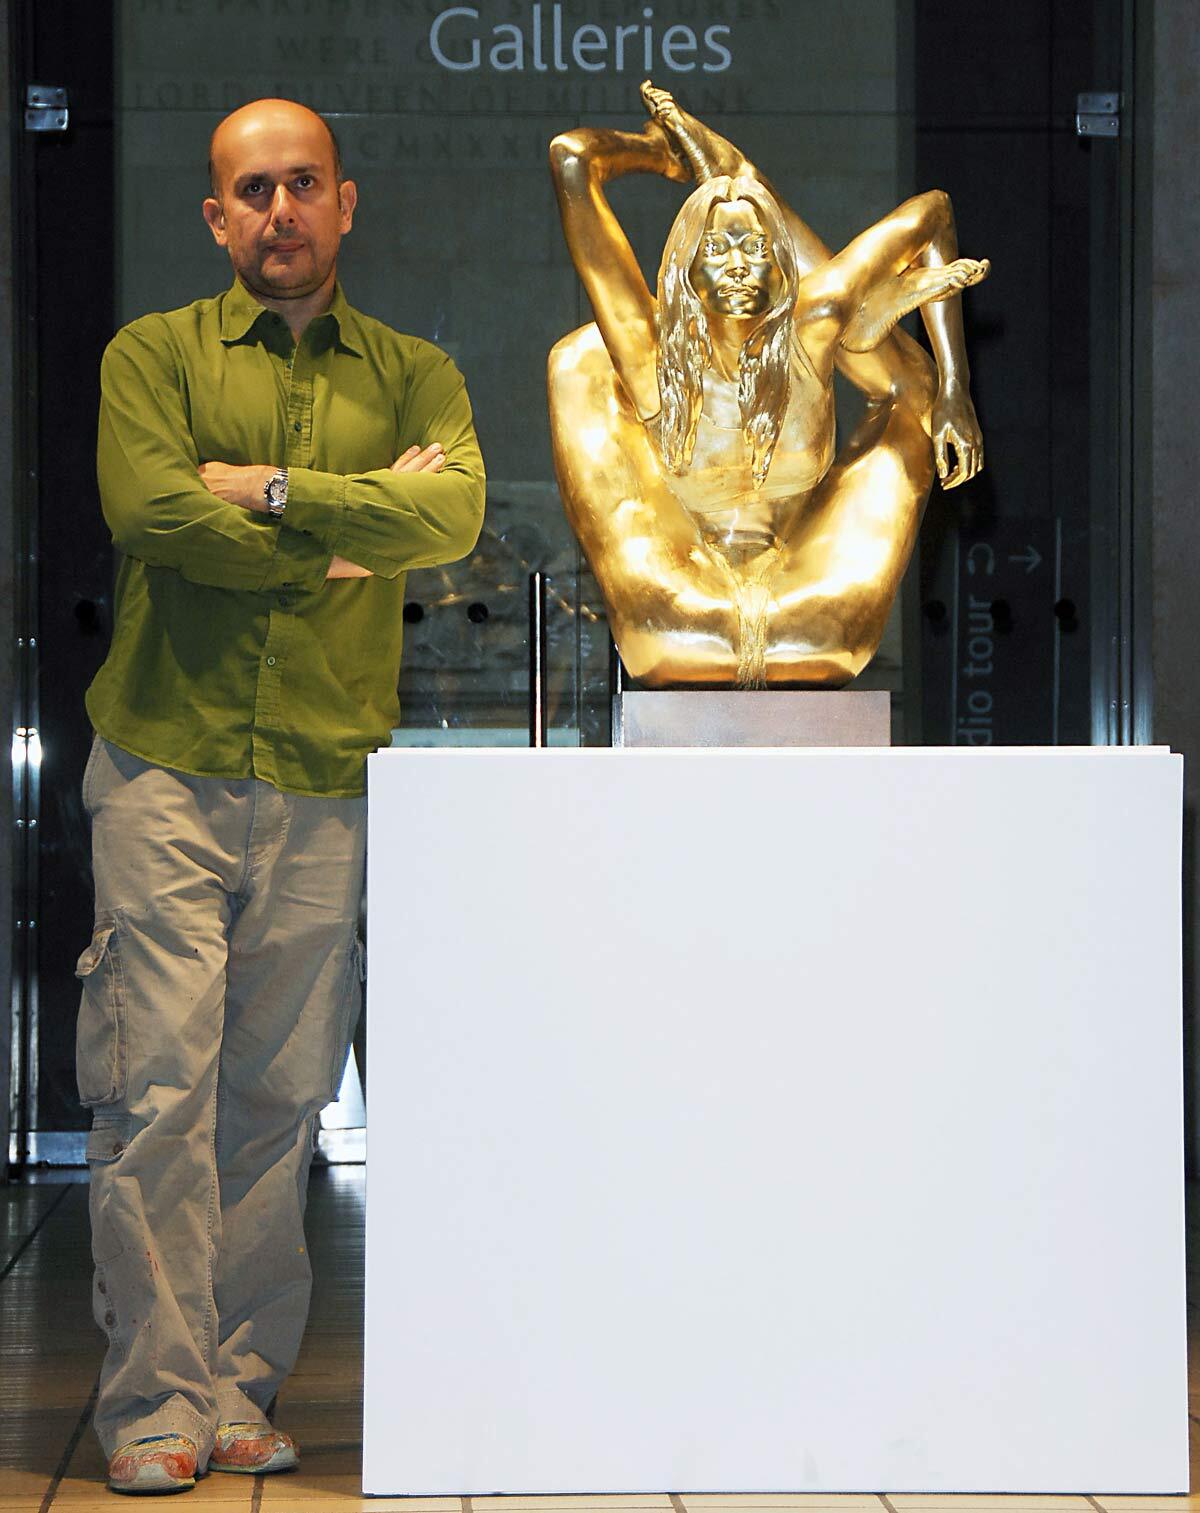 Скульптура Кейт Мосс отправилась в музей, а сама модель на большой экран